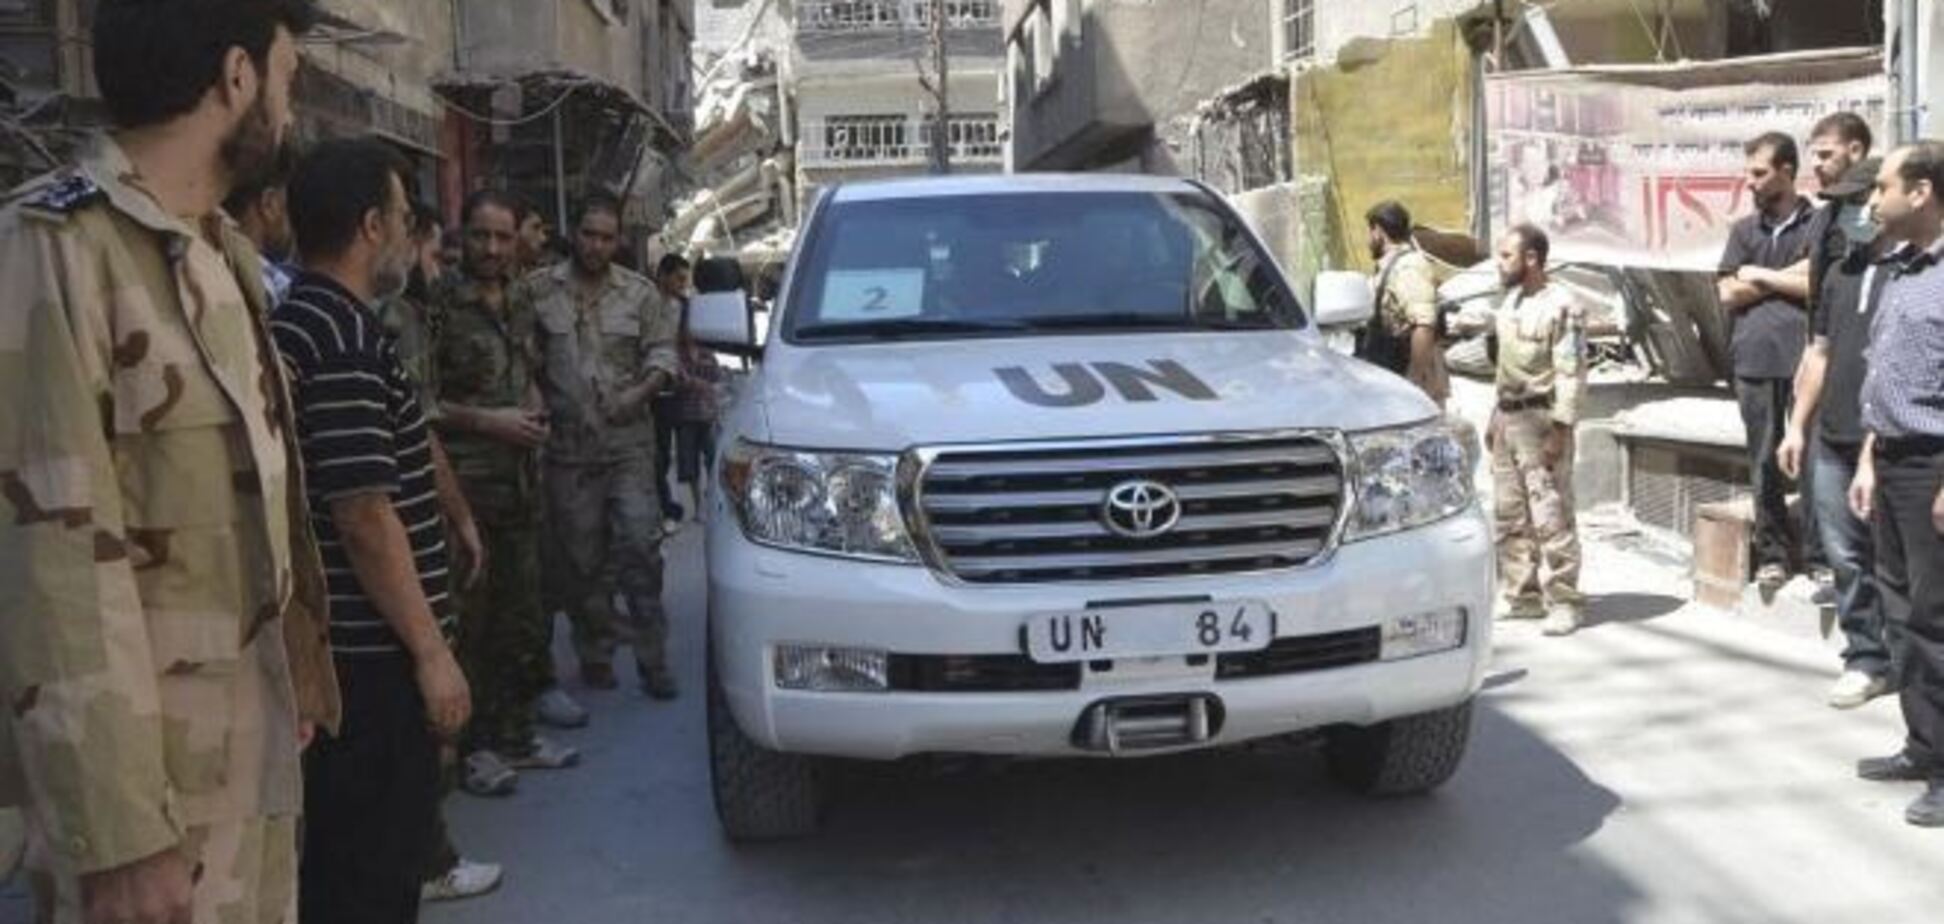 Експерти ООН з хімзброї повернуться з Сирії до 30 вересня